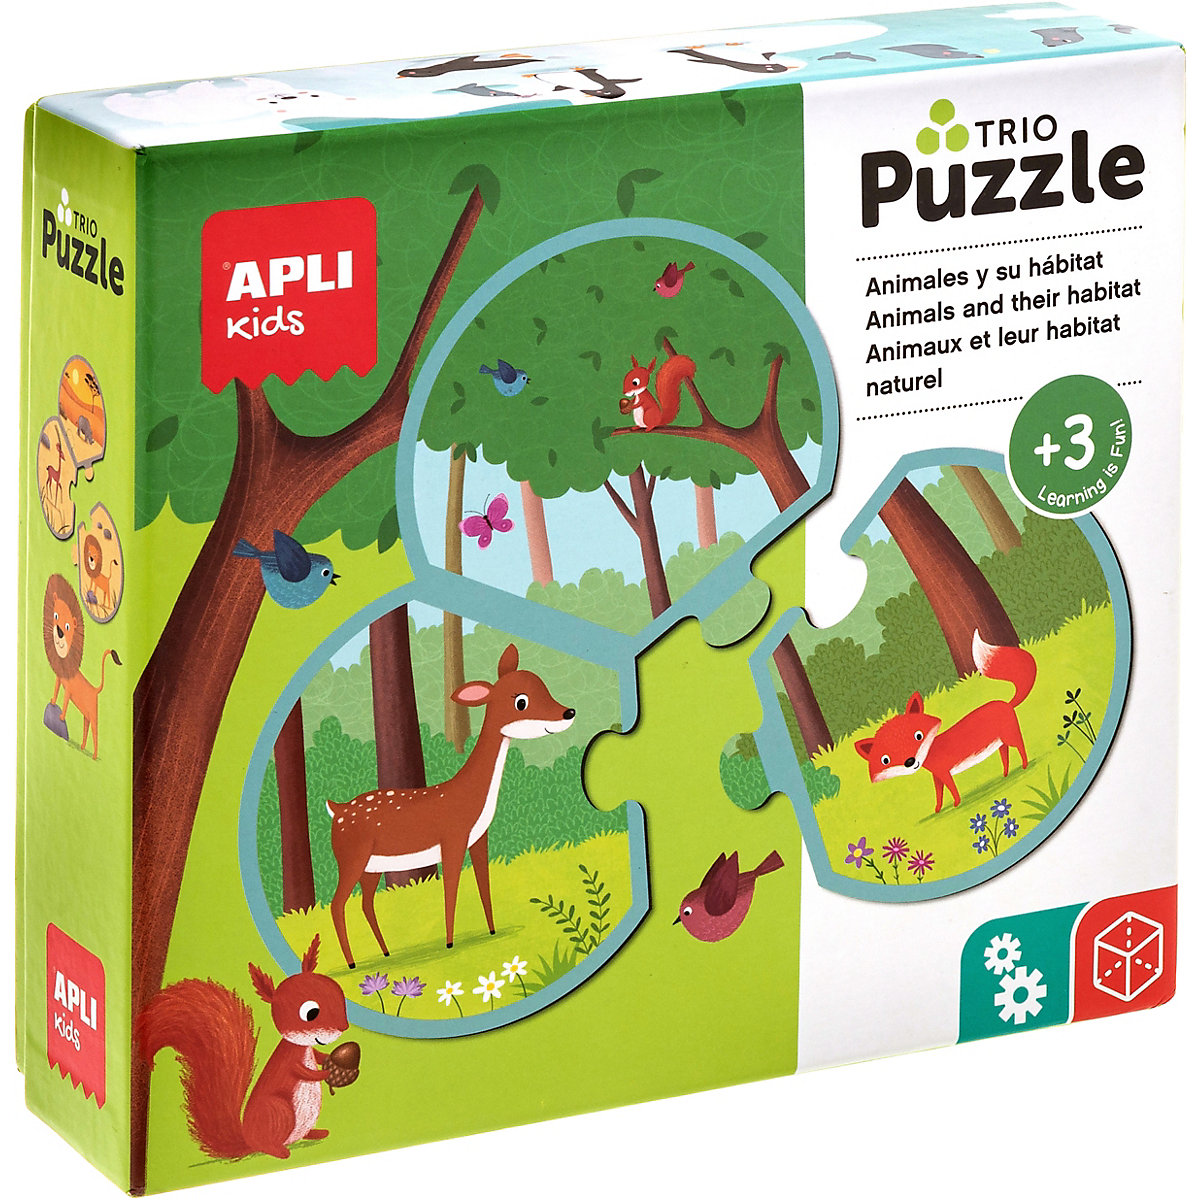 APLI Kids Trio Kinderpuzzle mit 24 Teilen und 8 Bilder-Trios